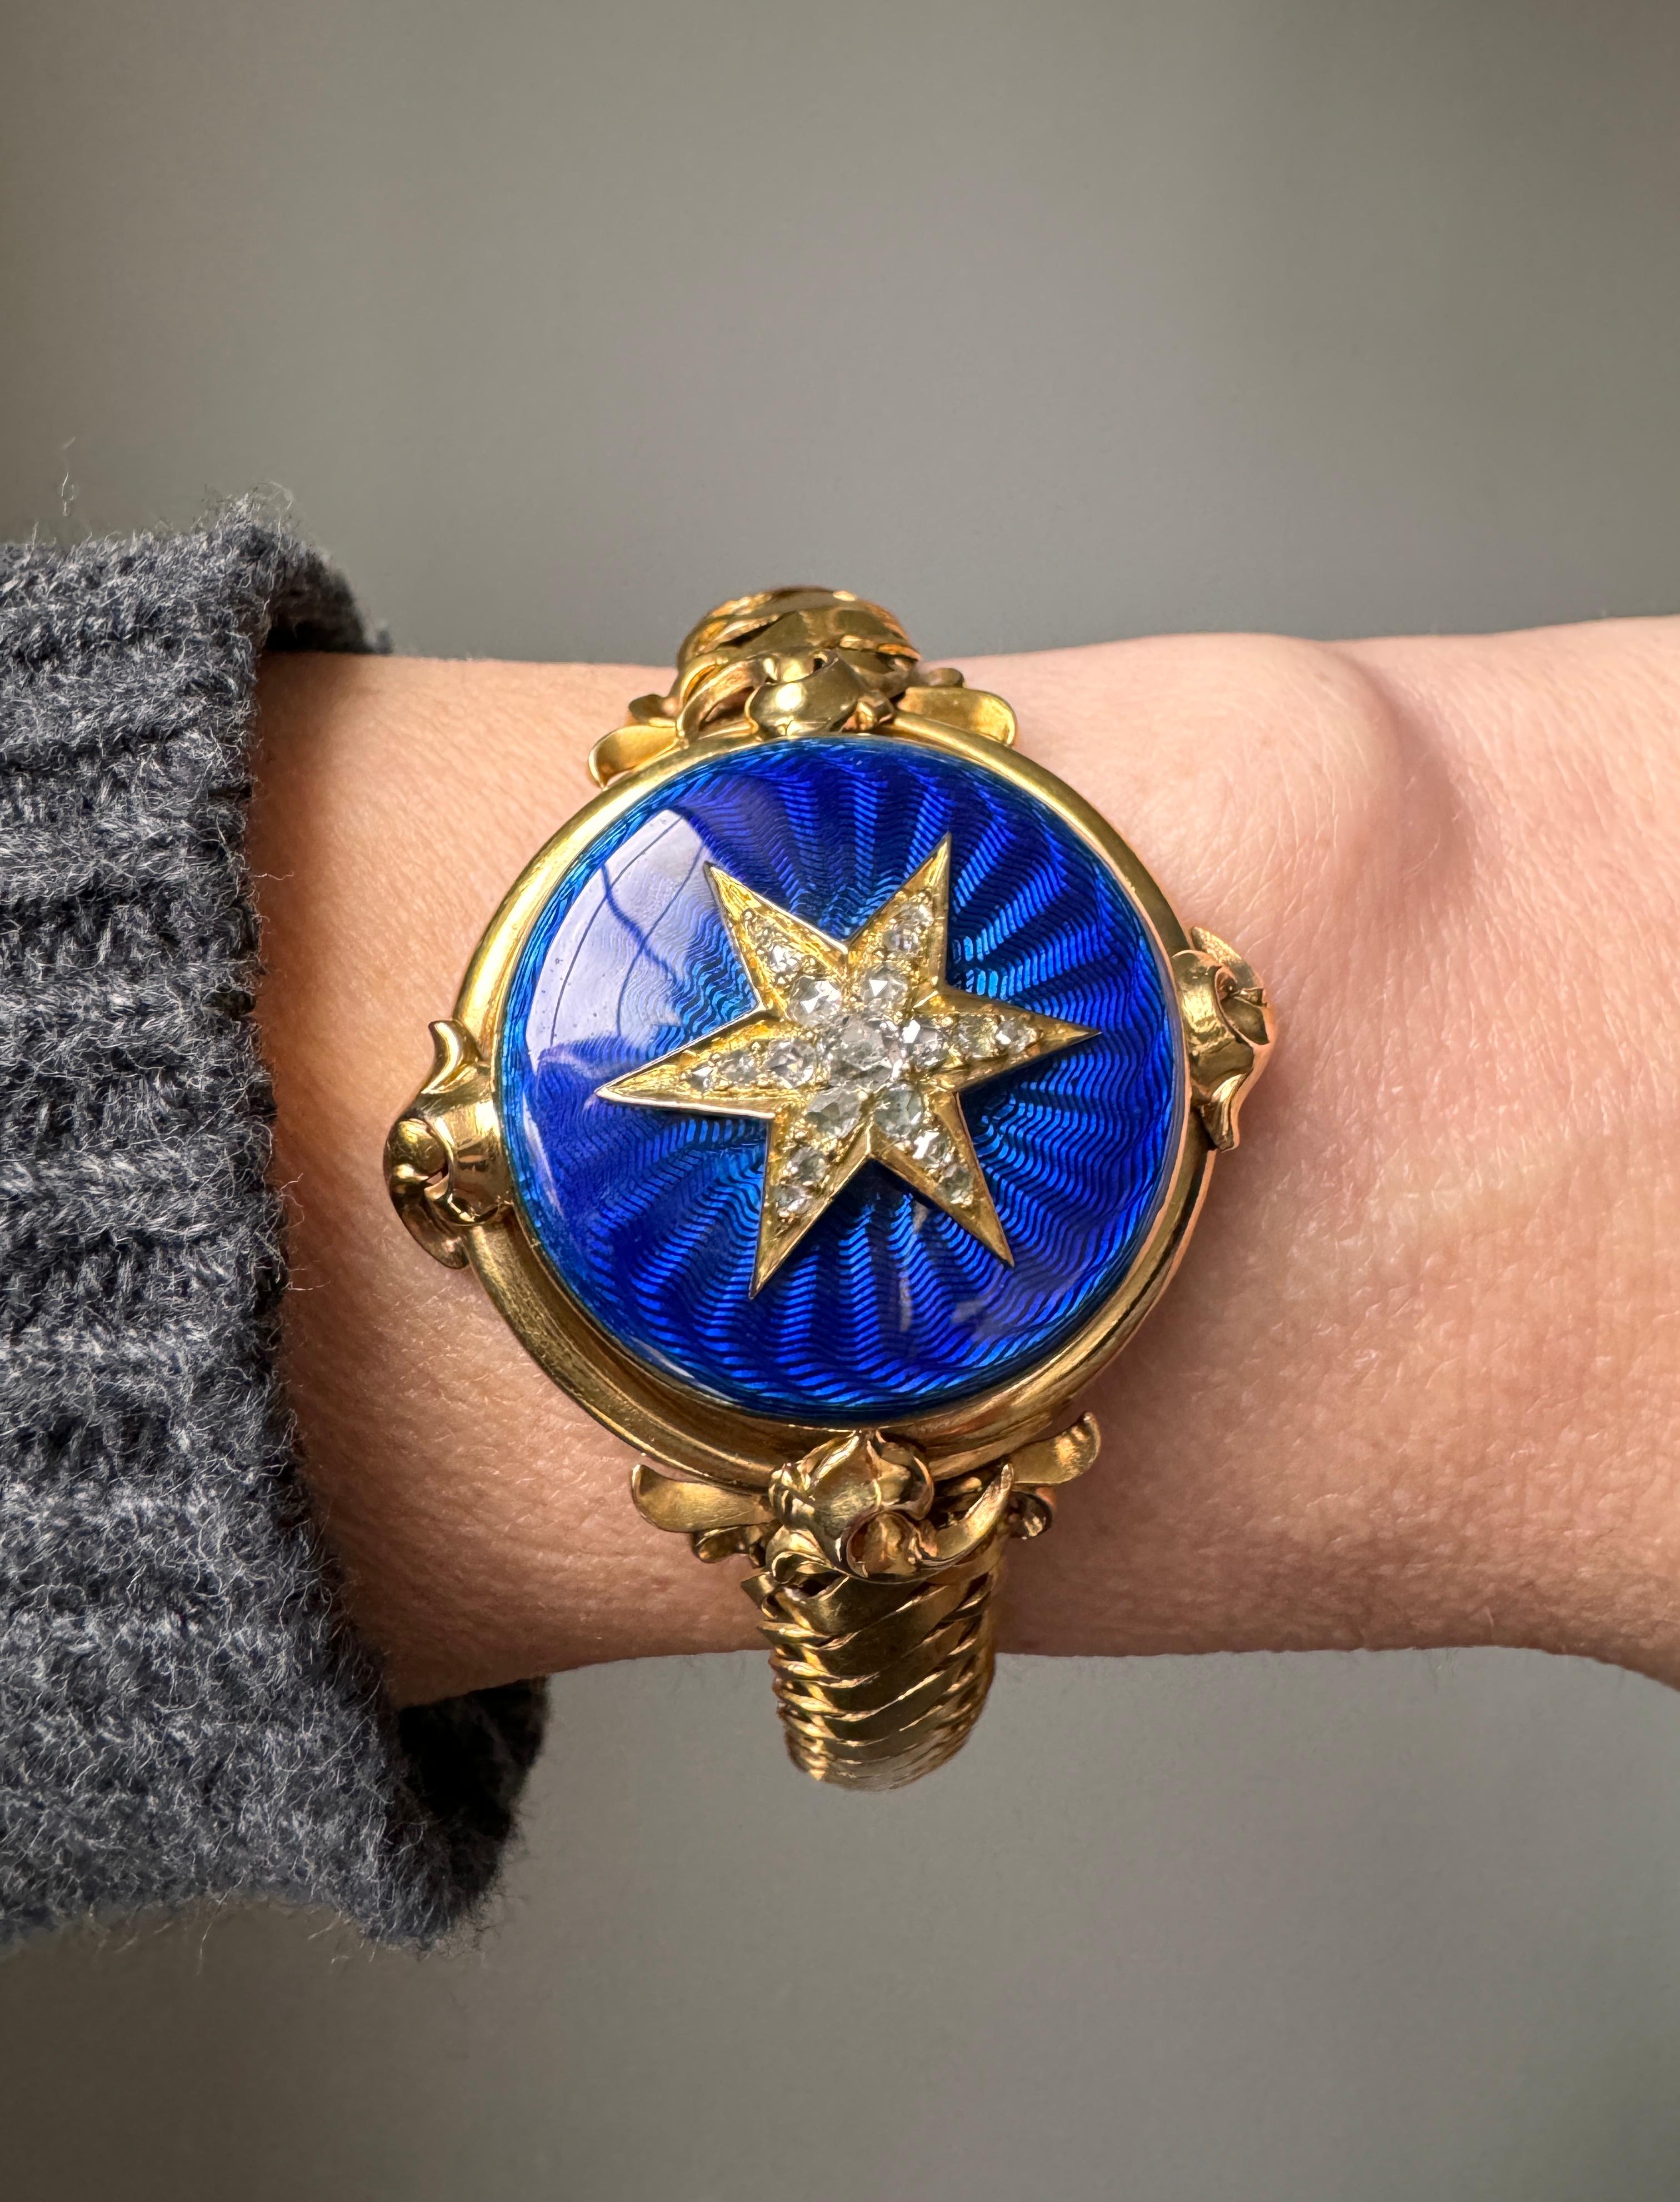 Dieses außergewöhnliche antike Medaillonarmband aus den 1870er Jahren glänzt mit einem sechsstrahligen, diamantbesetzten Stern auf einem kobaltblauen, guillochierten Emailledeckel. Das geschmeidige S-Gliederarmband endet in einer verdeckten